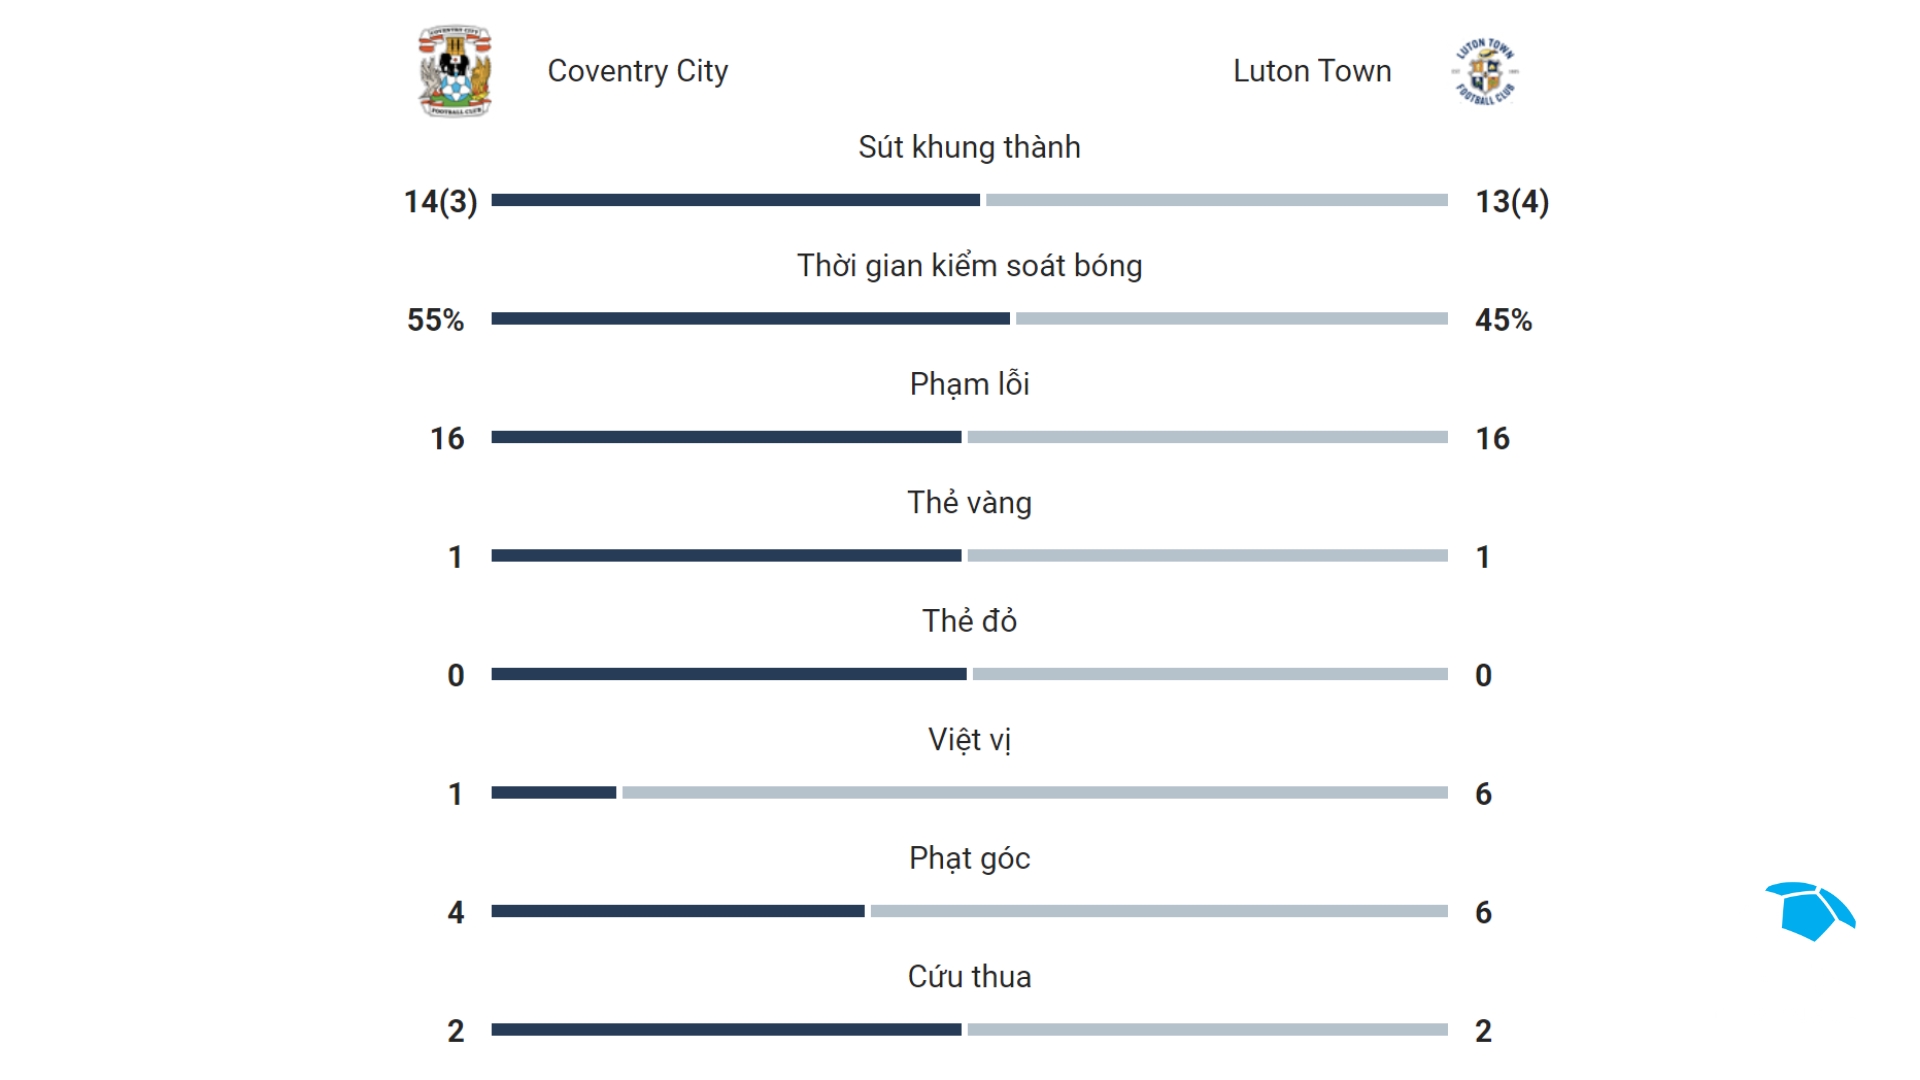 (Chung kết play-off tranh vé lên hạng Ngoại hạng Anh) Coventry City và Luton Town đã thể hiện trận đấu hấp dẫn trong trận chung kết play-off để giành vé lên thi đấu tại Ngoại hạng Anh, được gọi là "trận cầu 170 triệu bảng" - 4